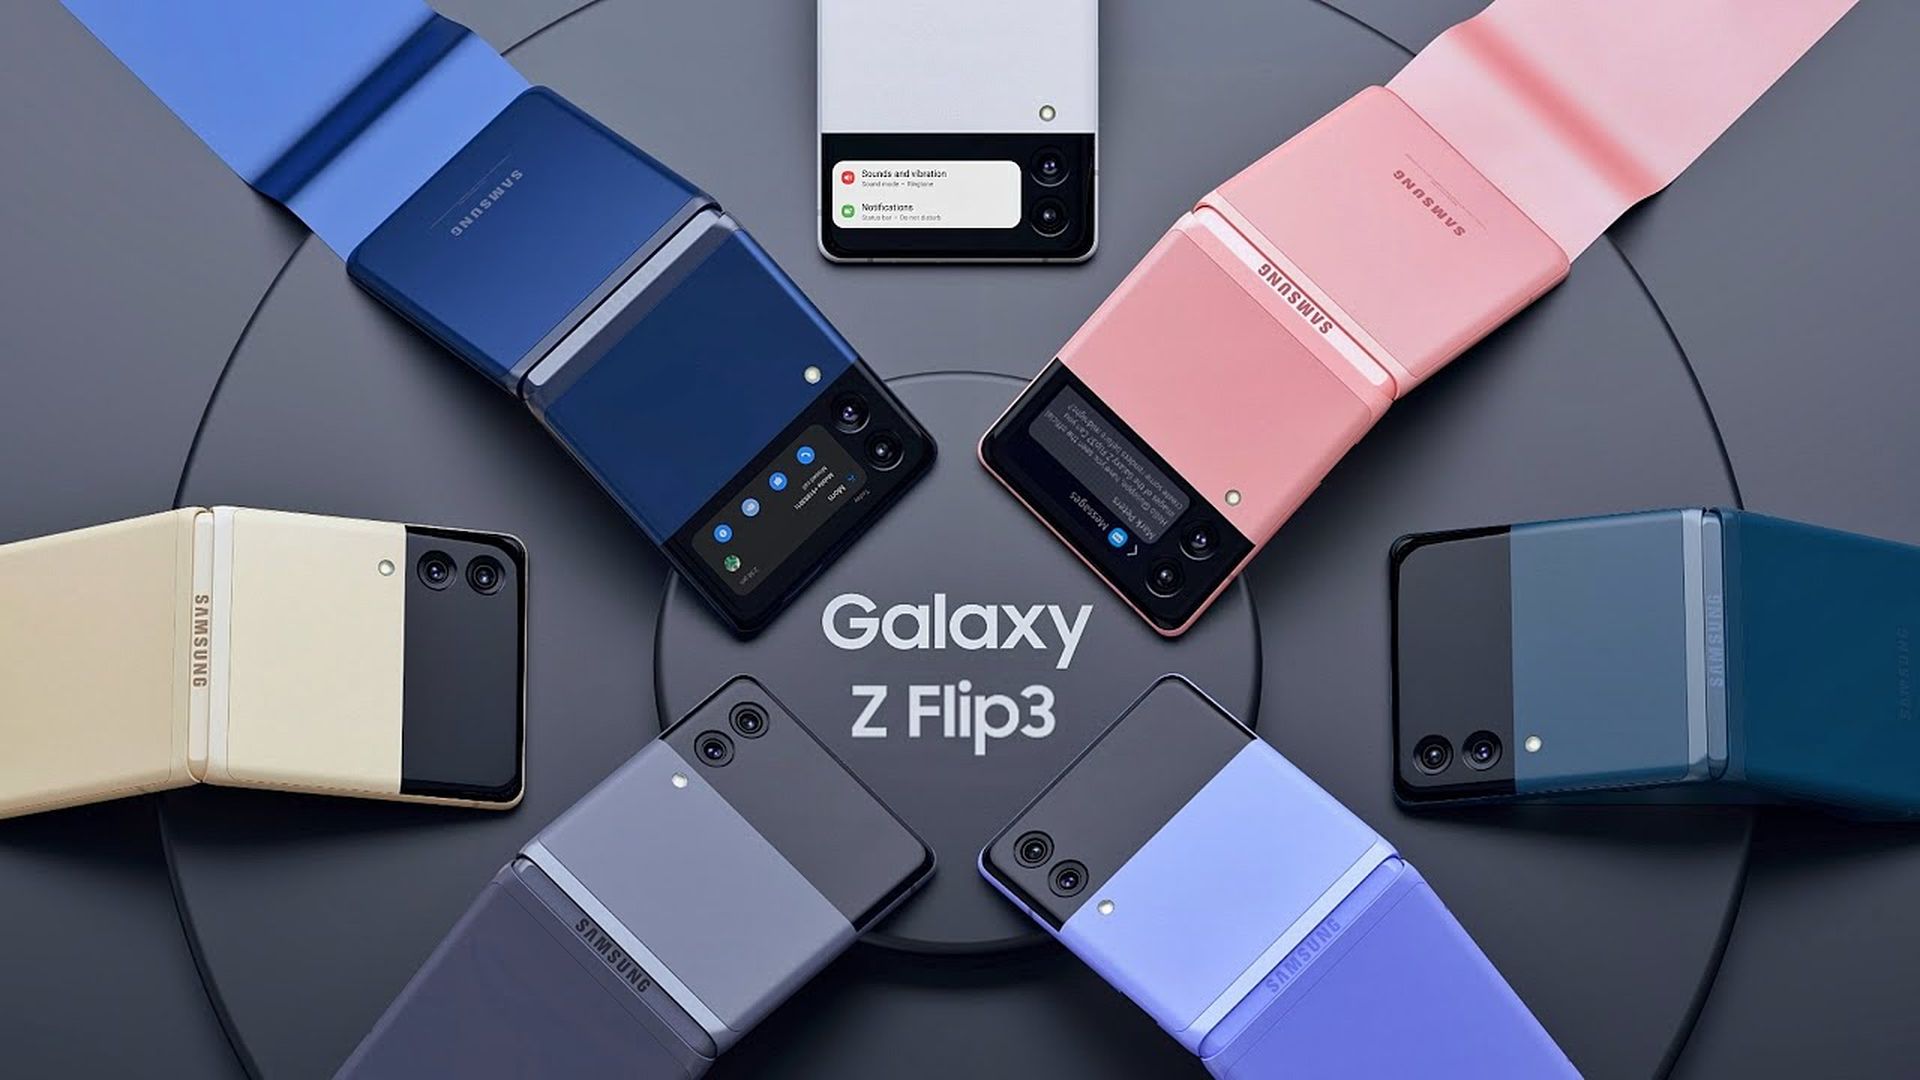 Karşılaştırma: Samsung Galaxy Z Fold 3 ve Galaxy Z Flip 3